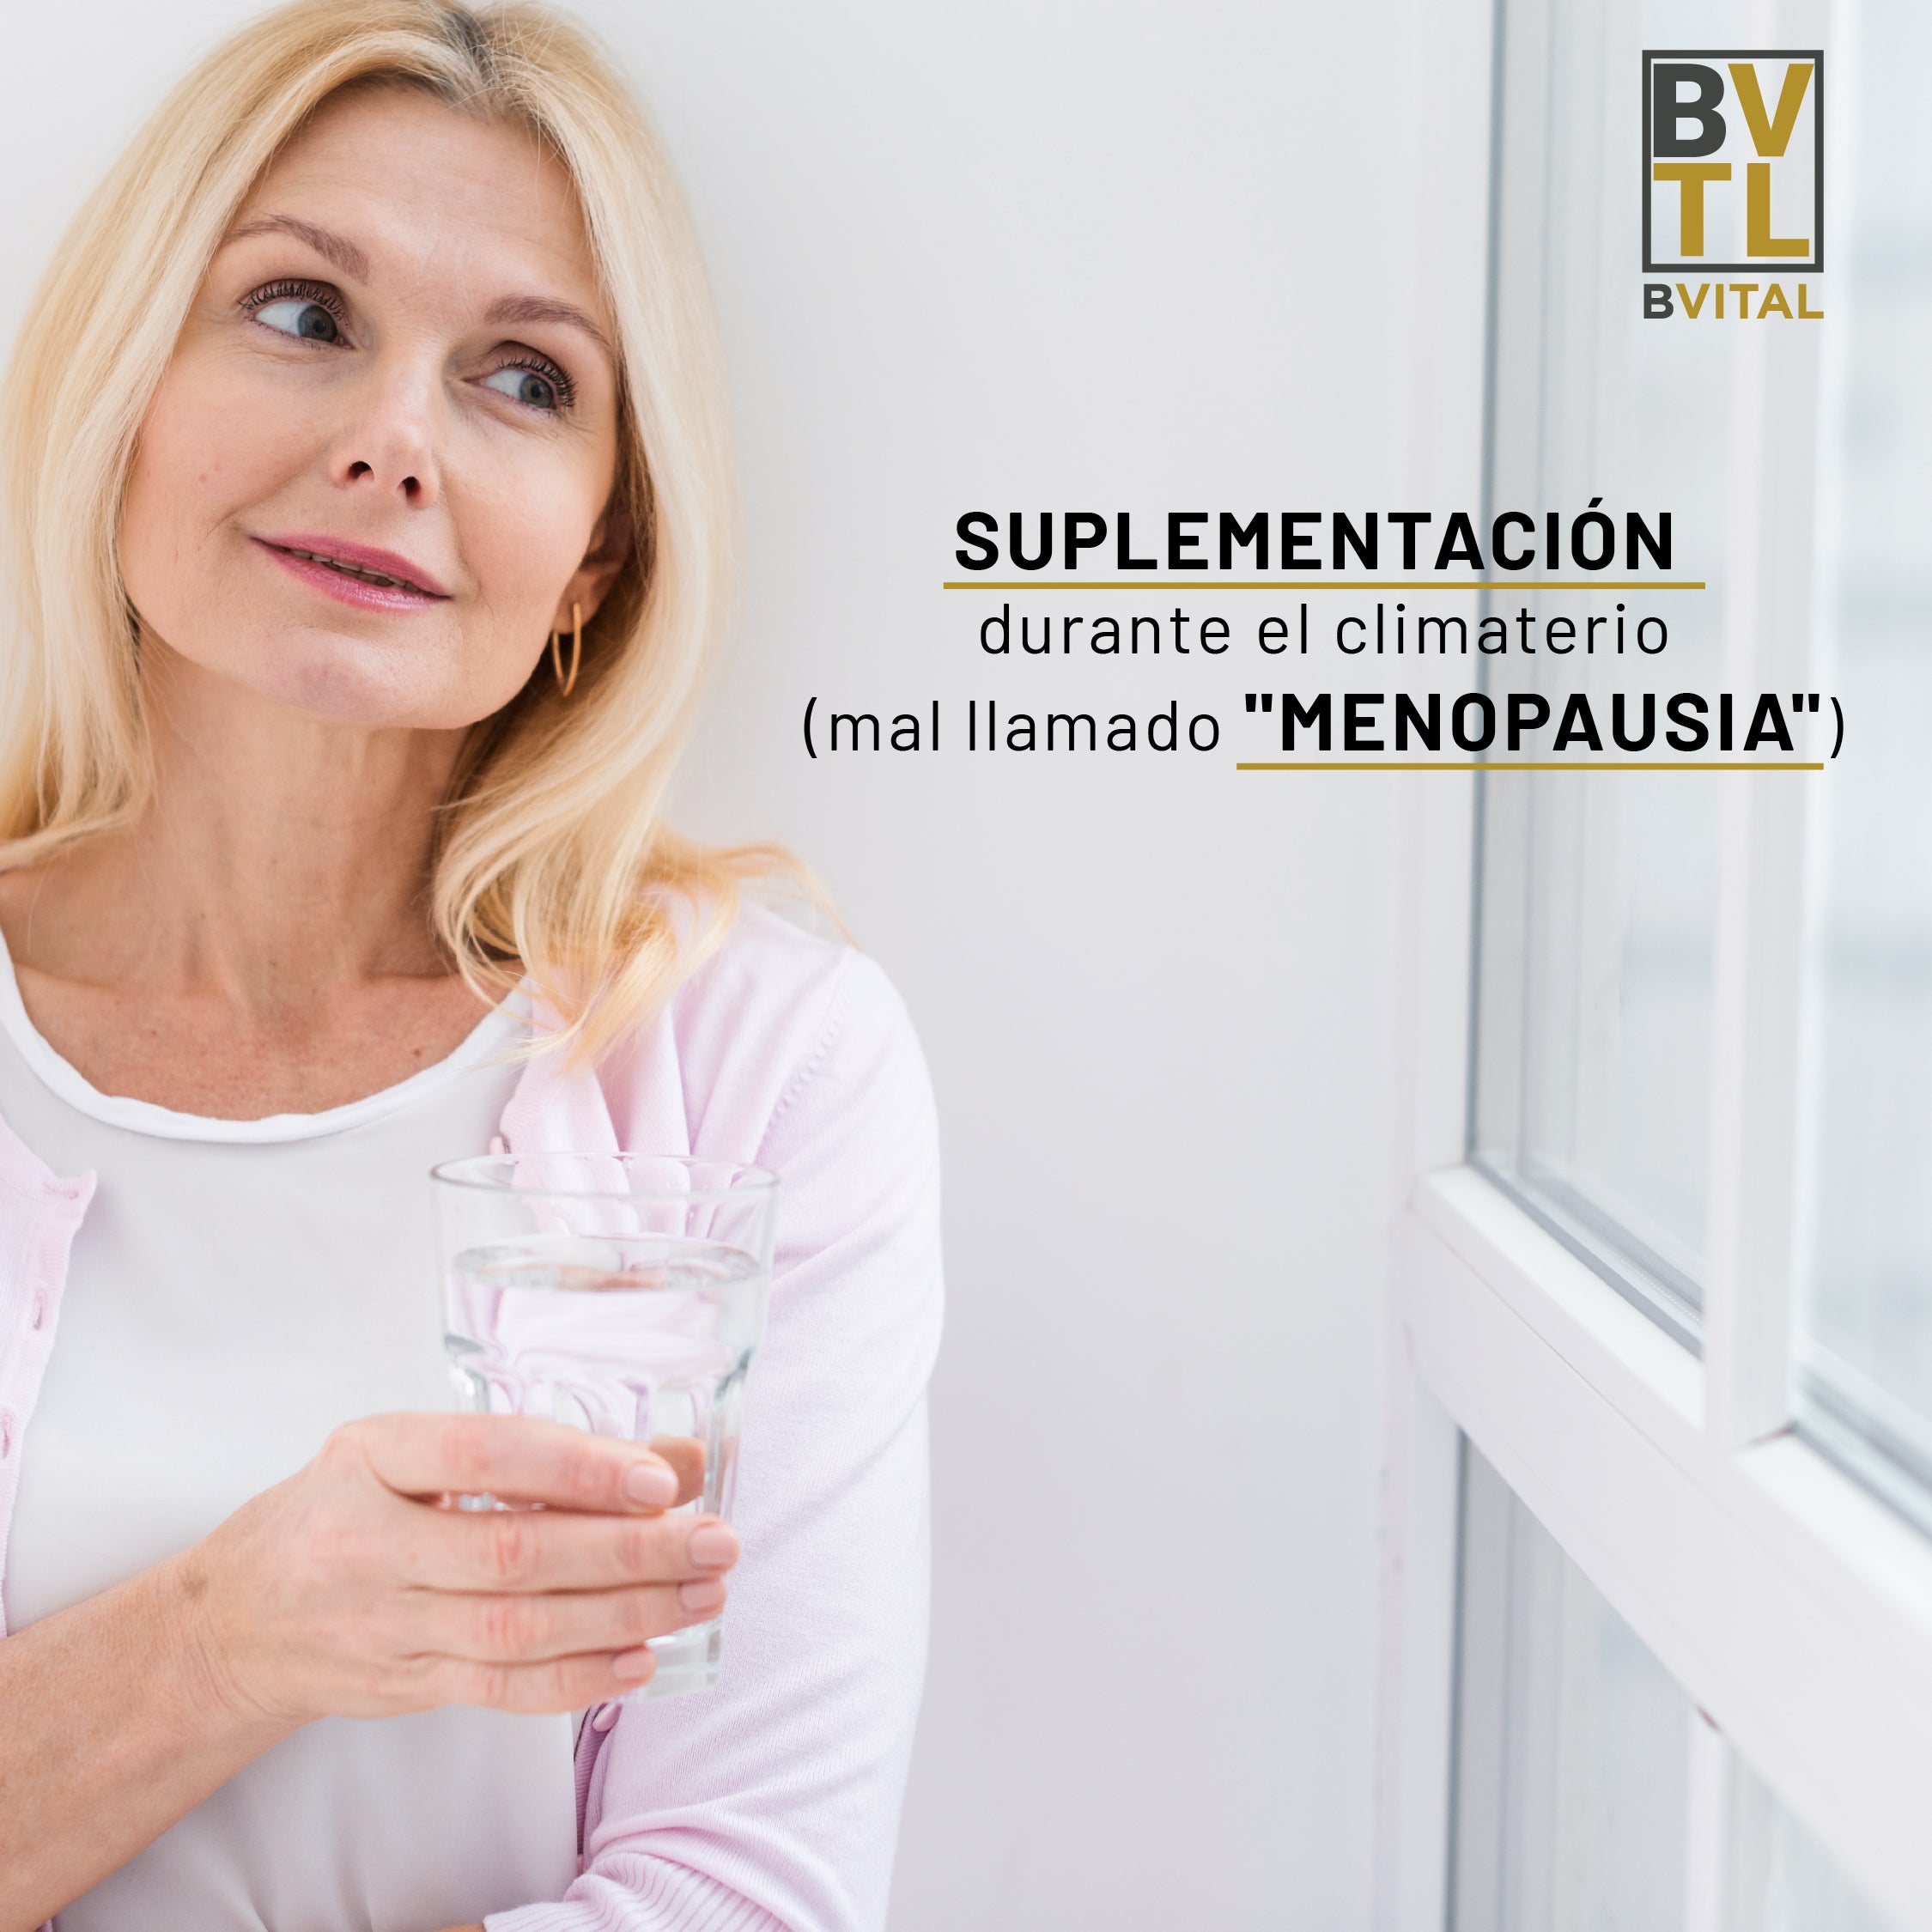 Suplementación durante el climaterio (mal llamado "menopausia")